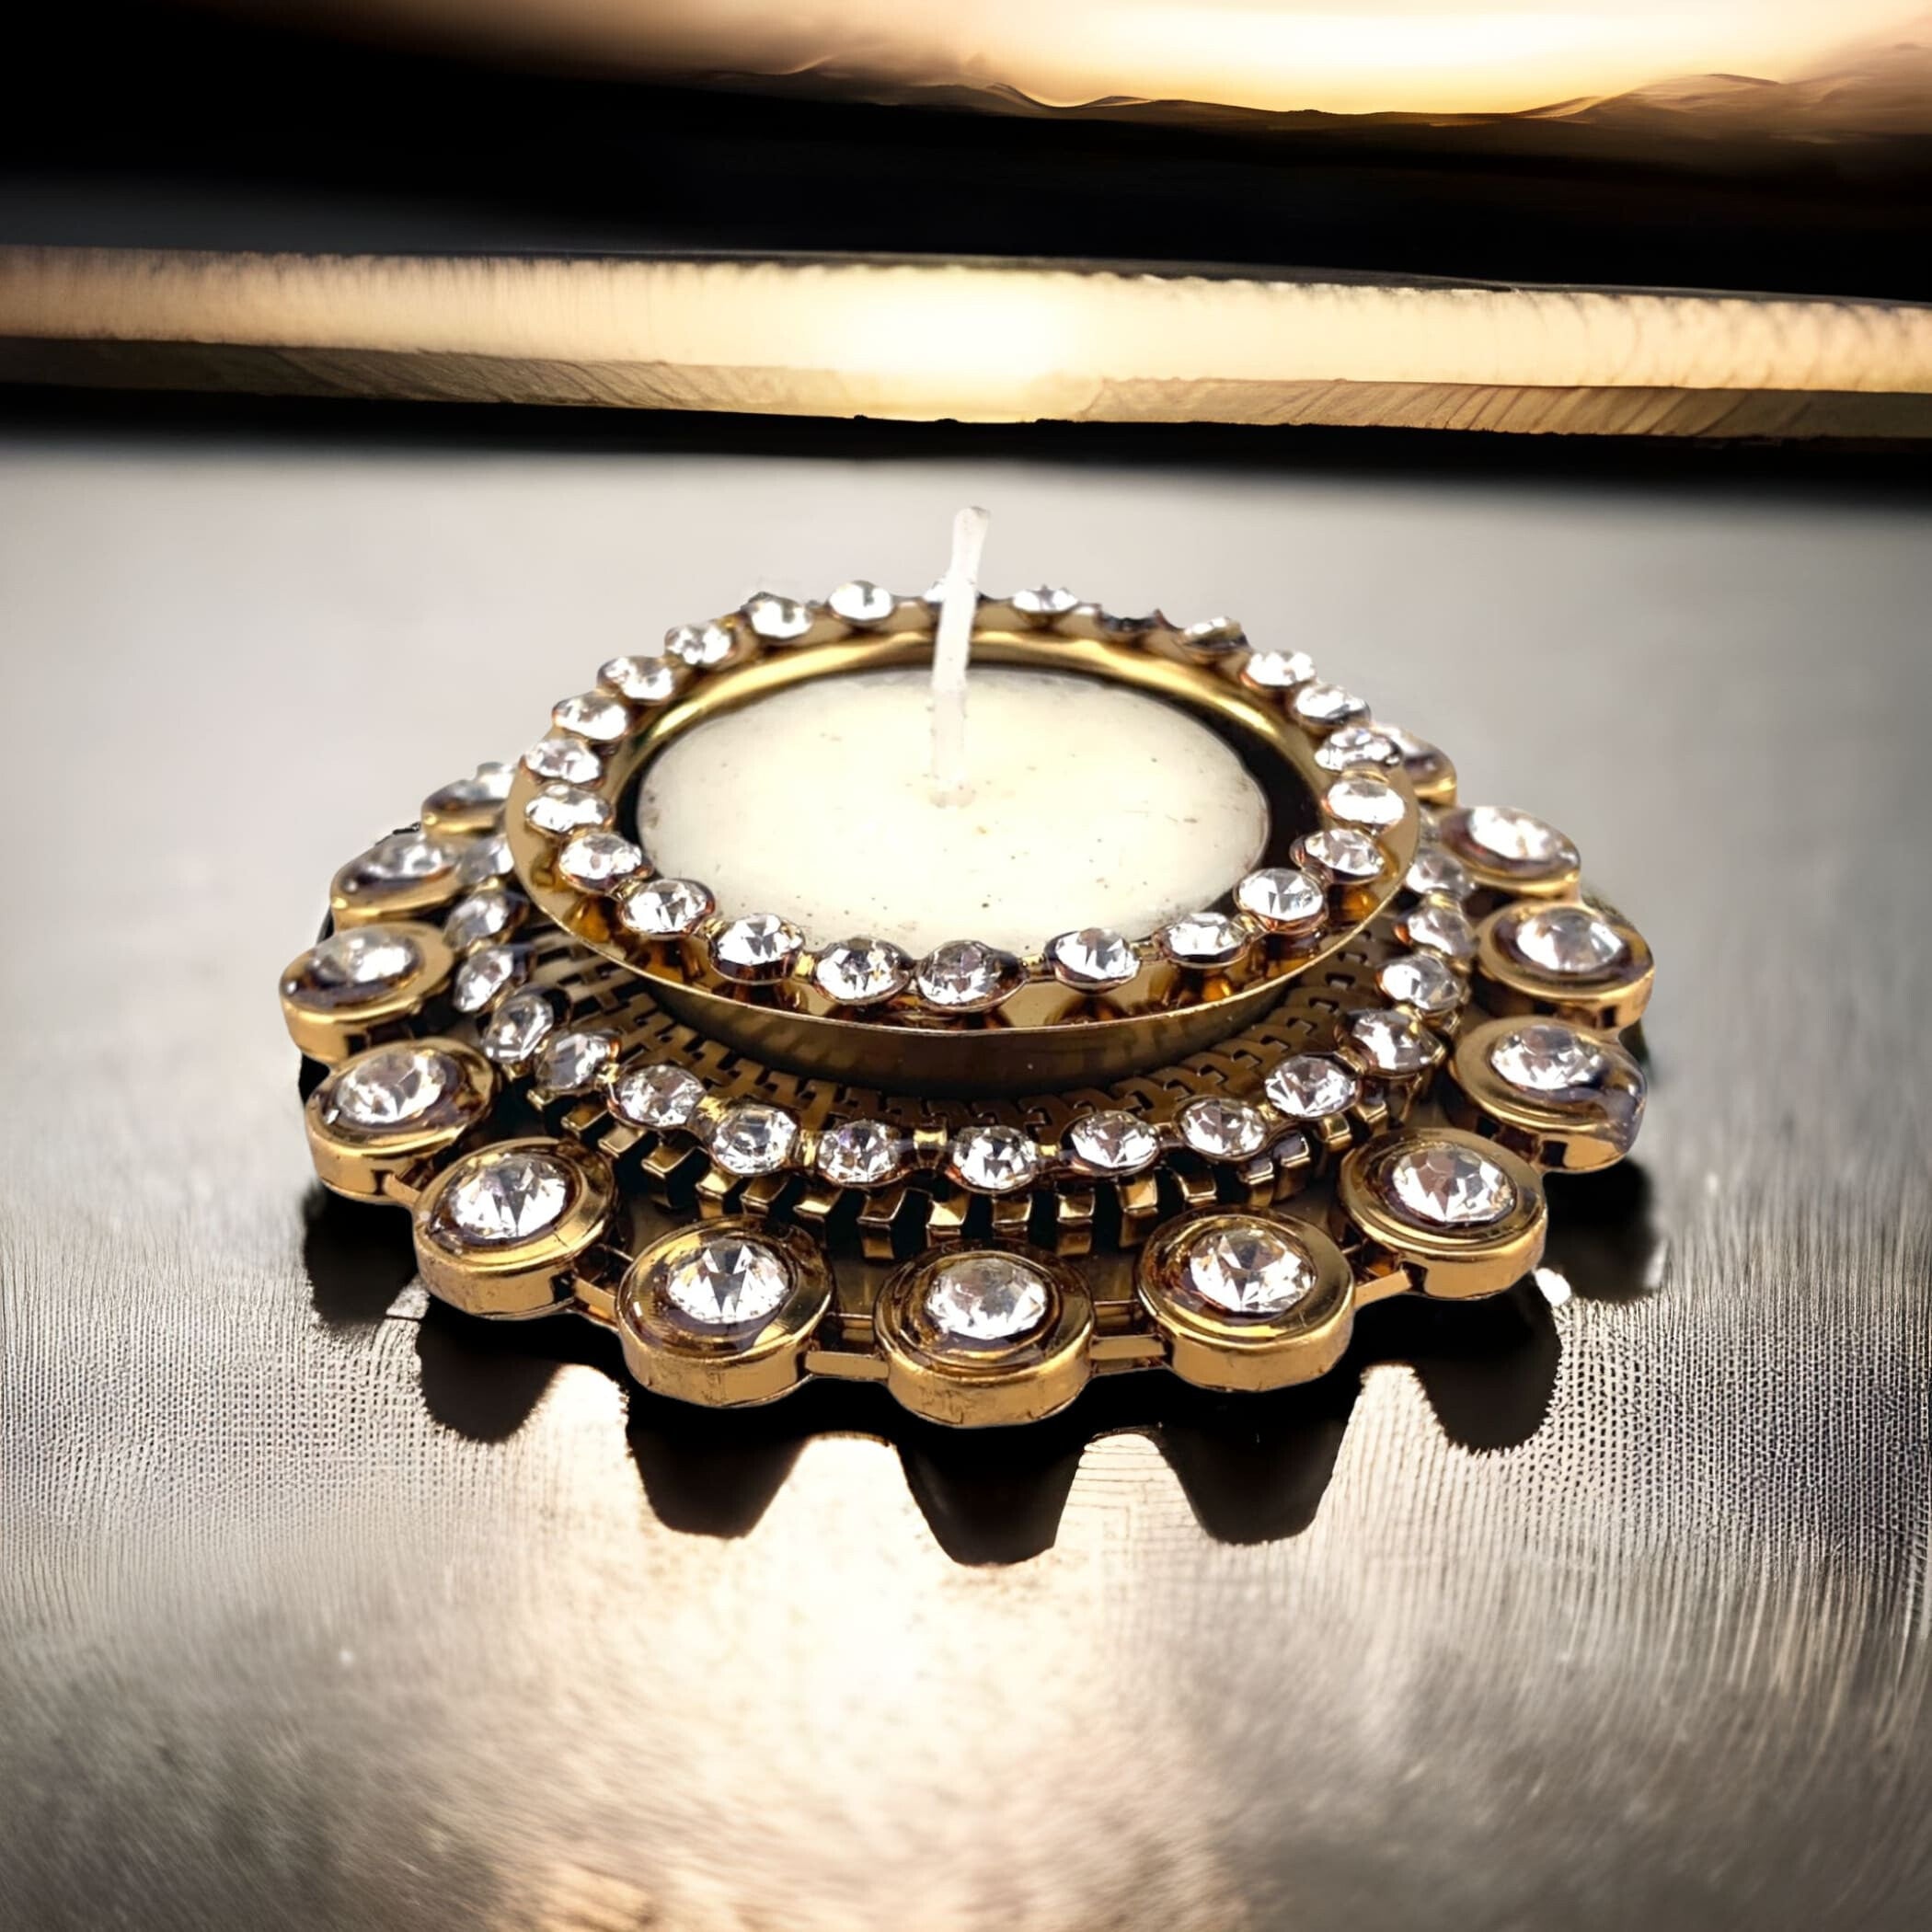 Diwali Tealight Candle Holder Indian Decoration Boho Decor